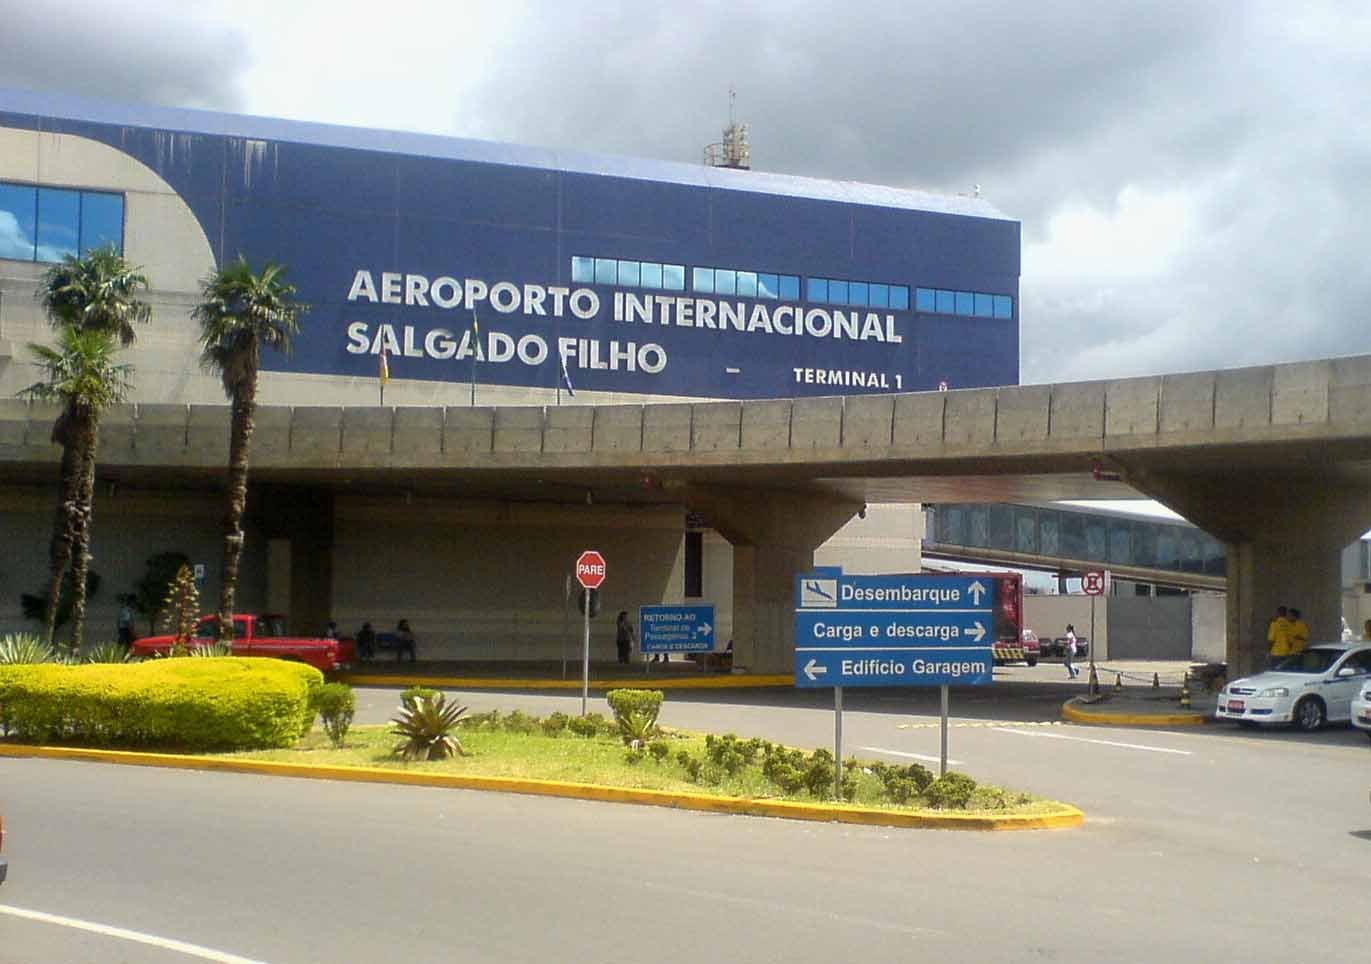 Voos no Aeroporto Salgado Filho têm horários alterados devido a suspensão das operações por conta de raios na região